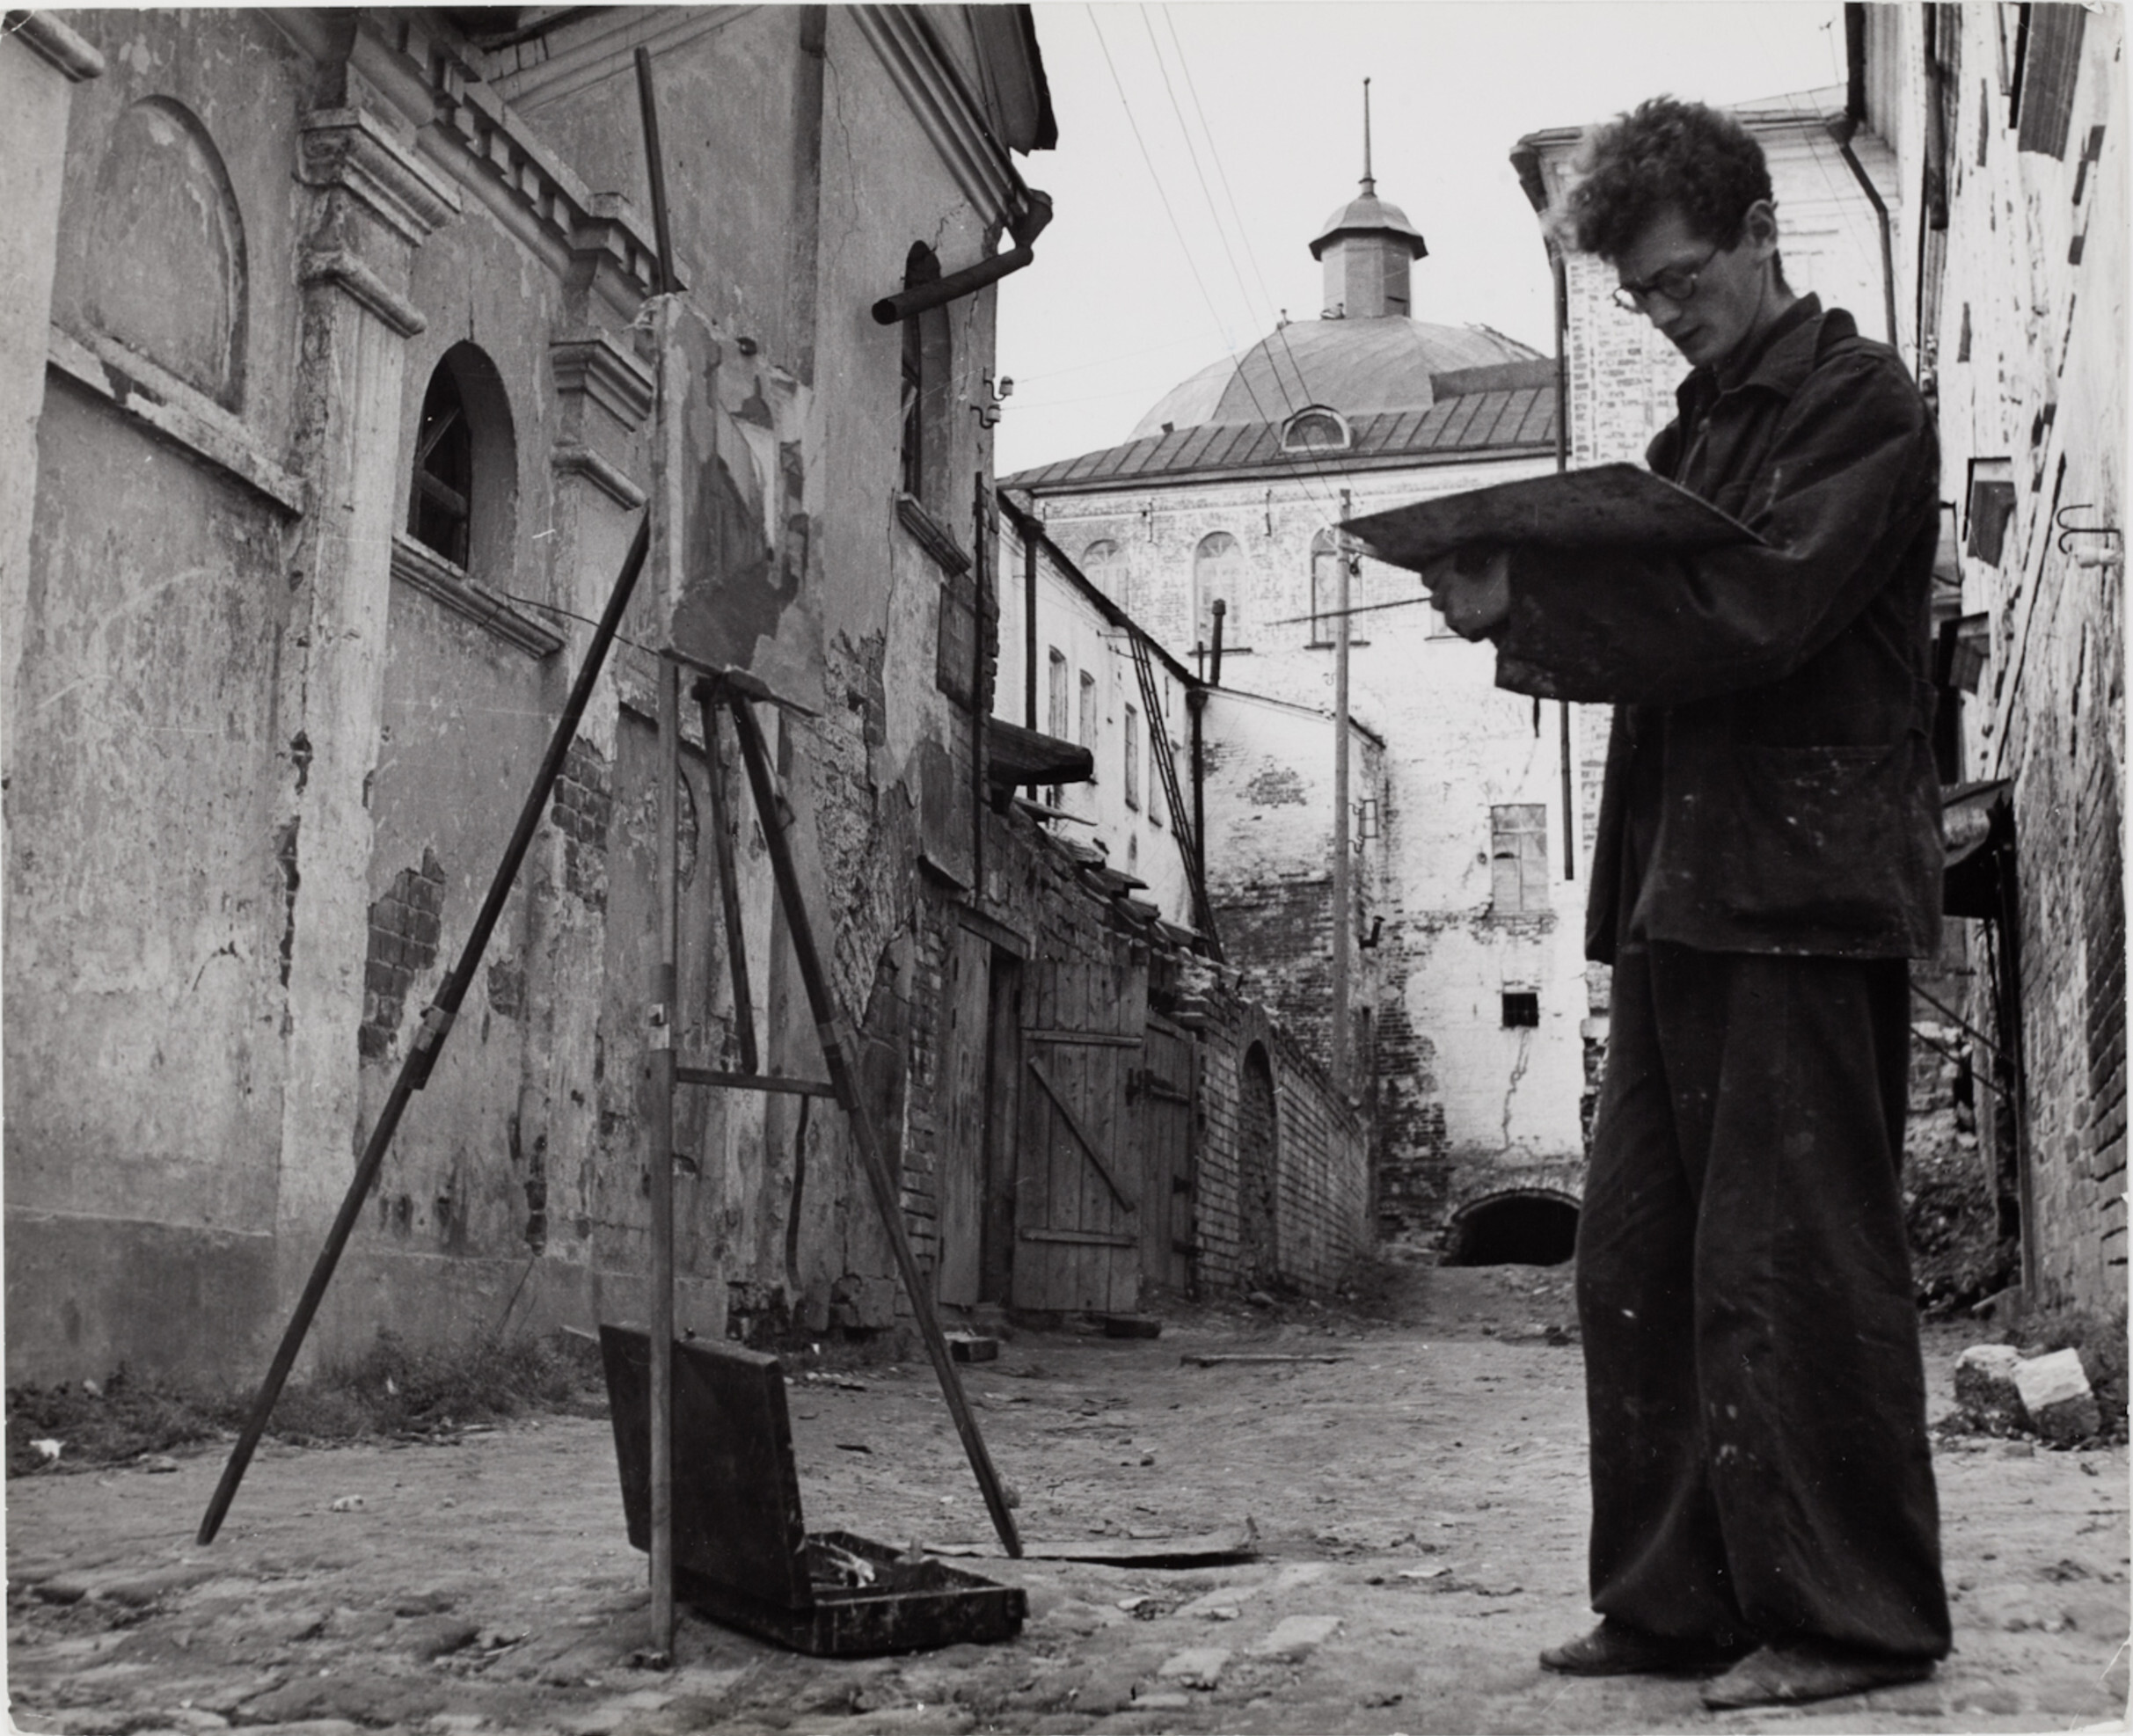 Молодой человек смешивает краски на палитре, стоя перед своим холстом и мольбертом в Свято-Троицкой Сергиевской Лавре, Загорск, Россия, 1947 год. Фотограф Роберт Капа